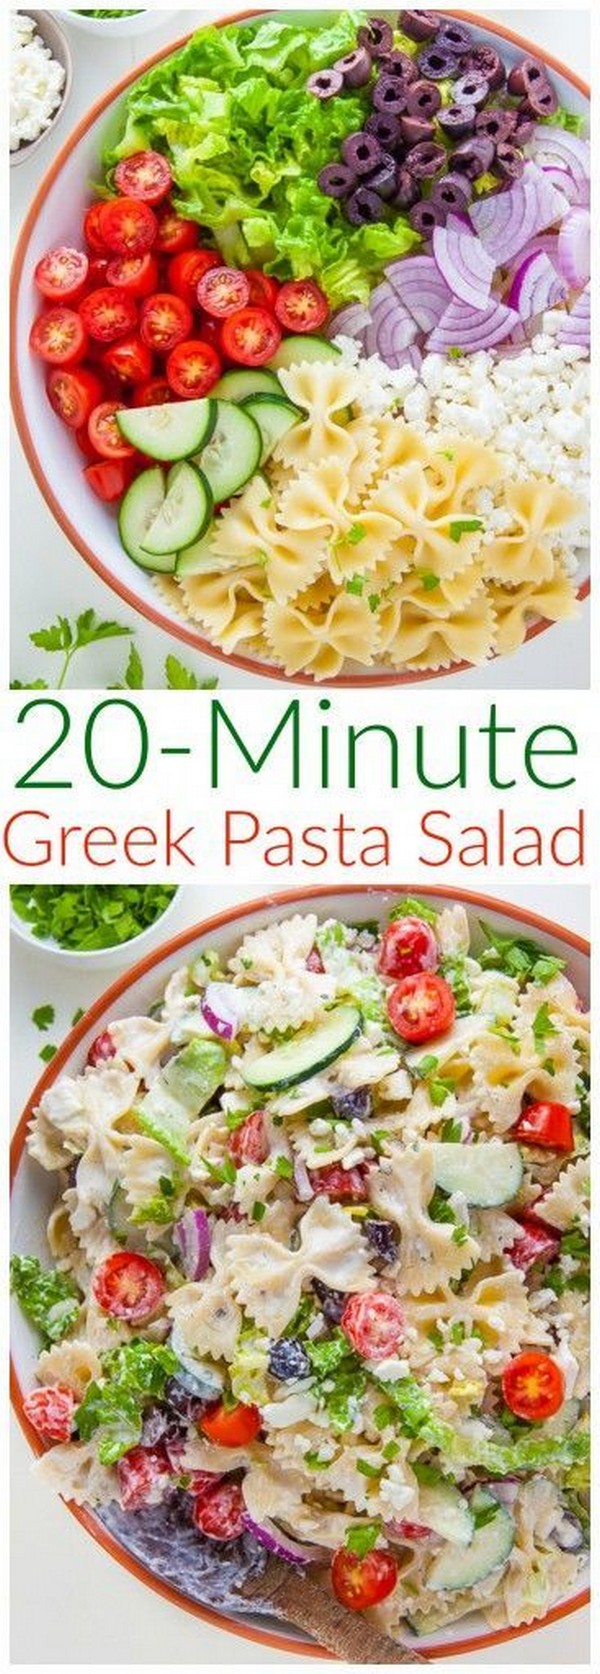 20-Minute Greek Pasta Salad